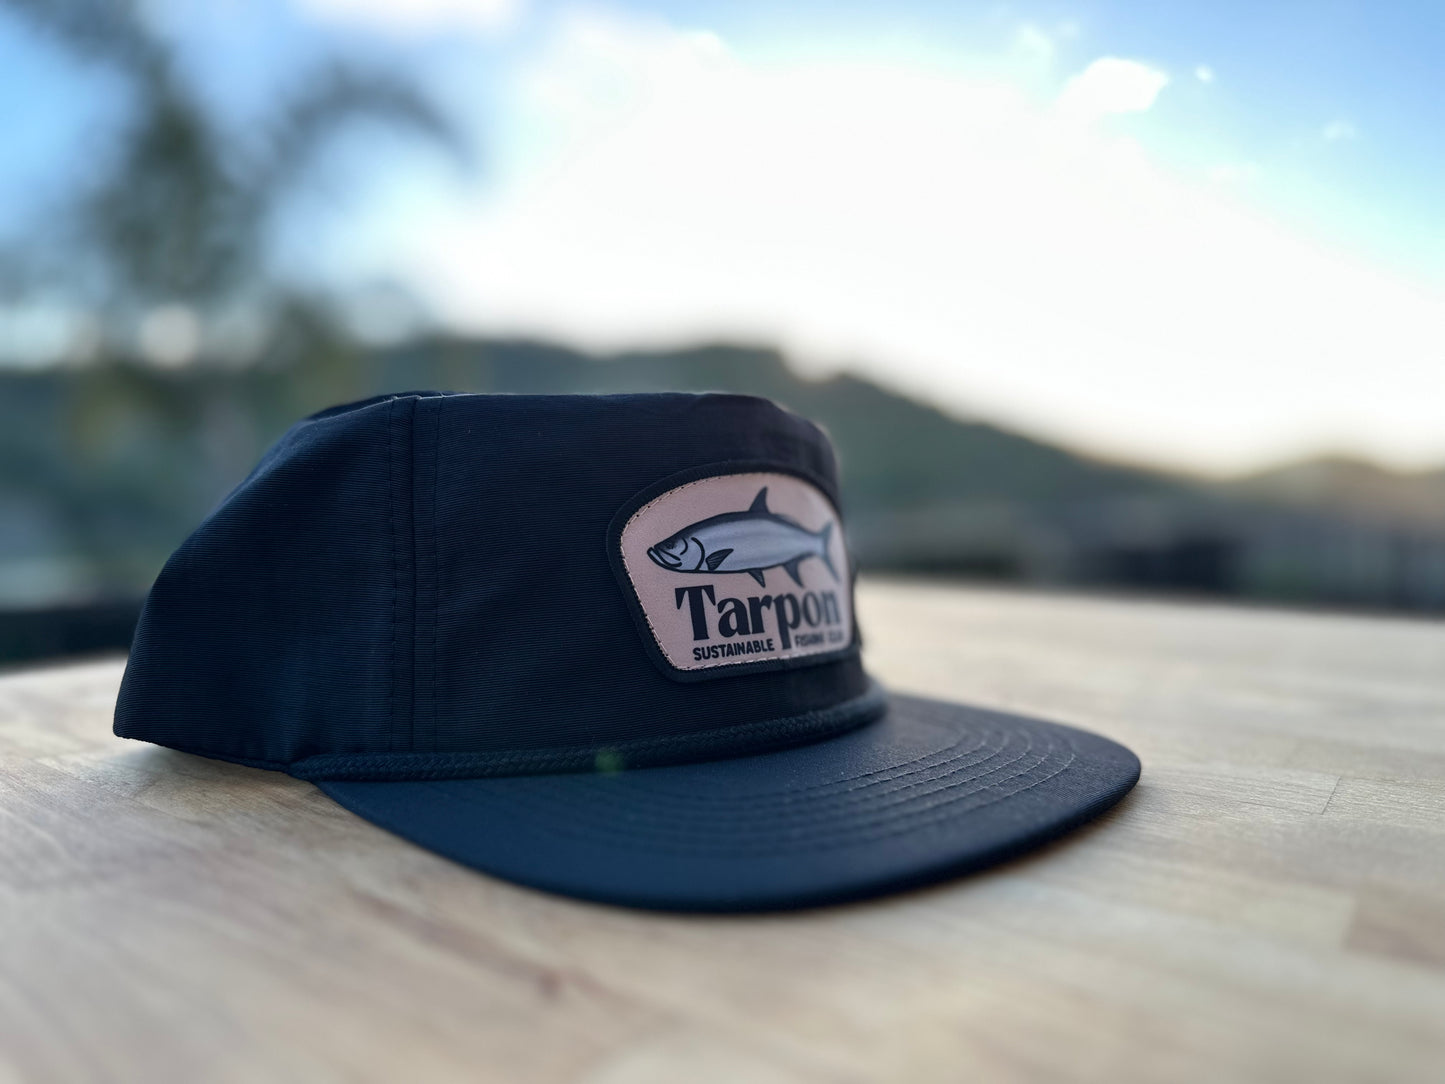 Tarpon Hat - Black